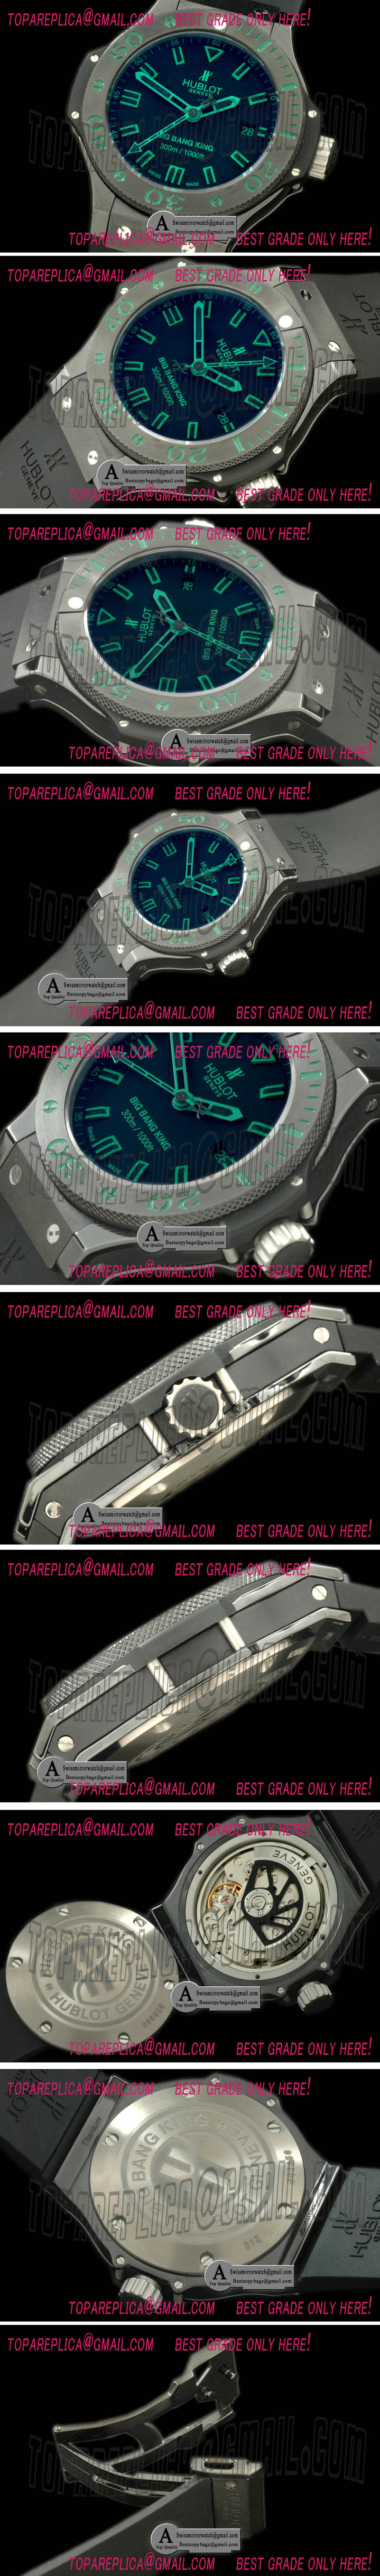 Hublot Big Bang King 312.PM.1189.RX Green Magic A-7750 Replica Watches